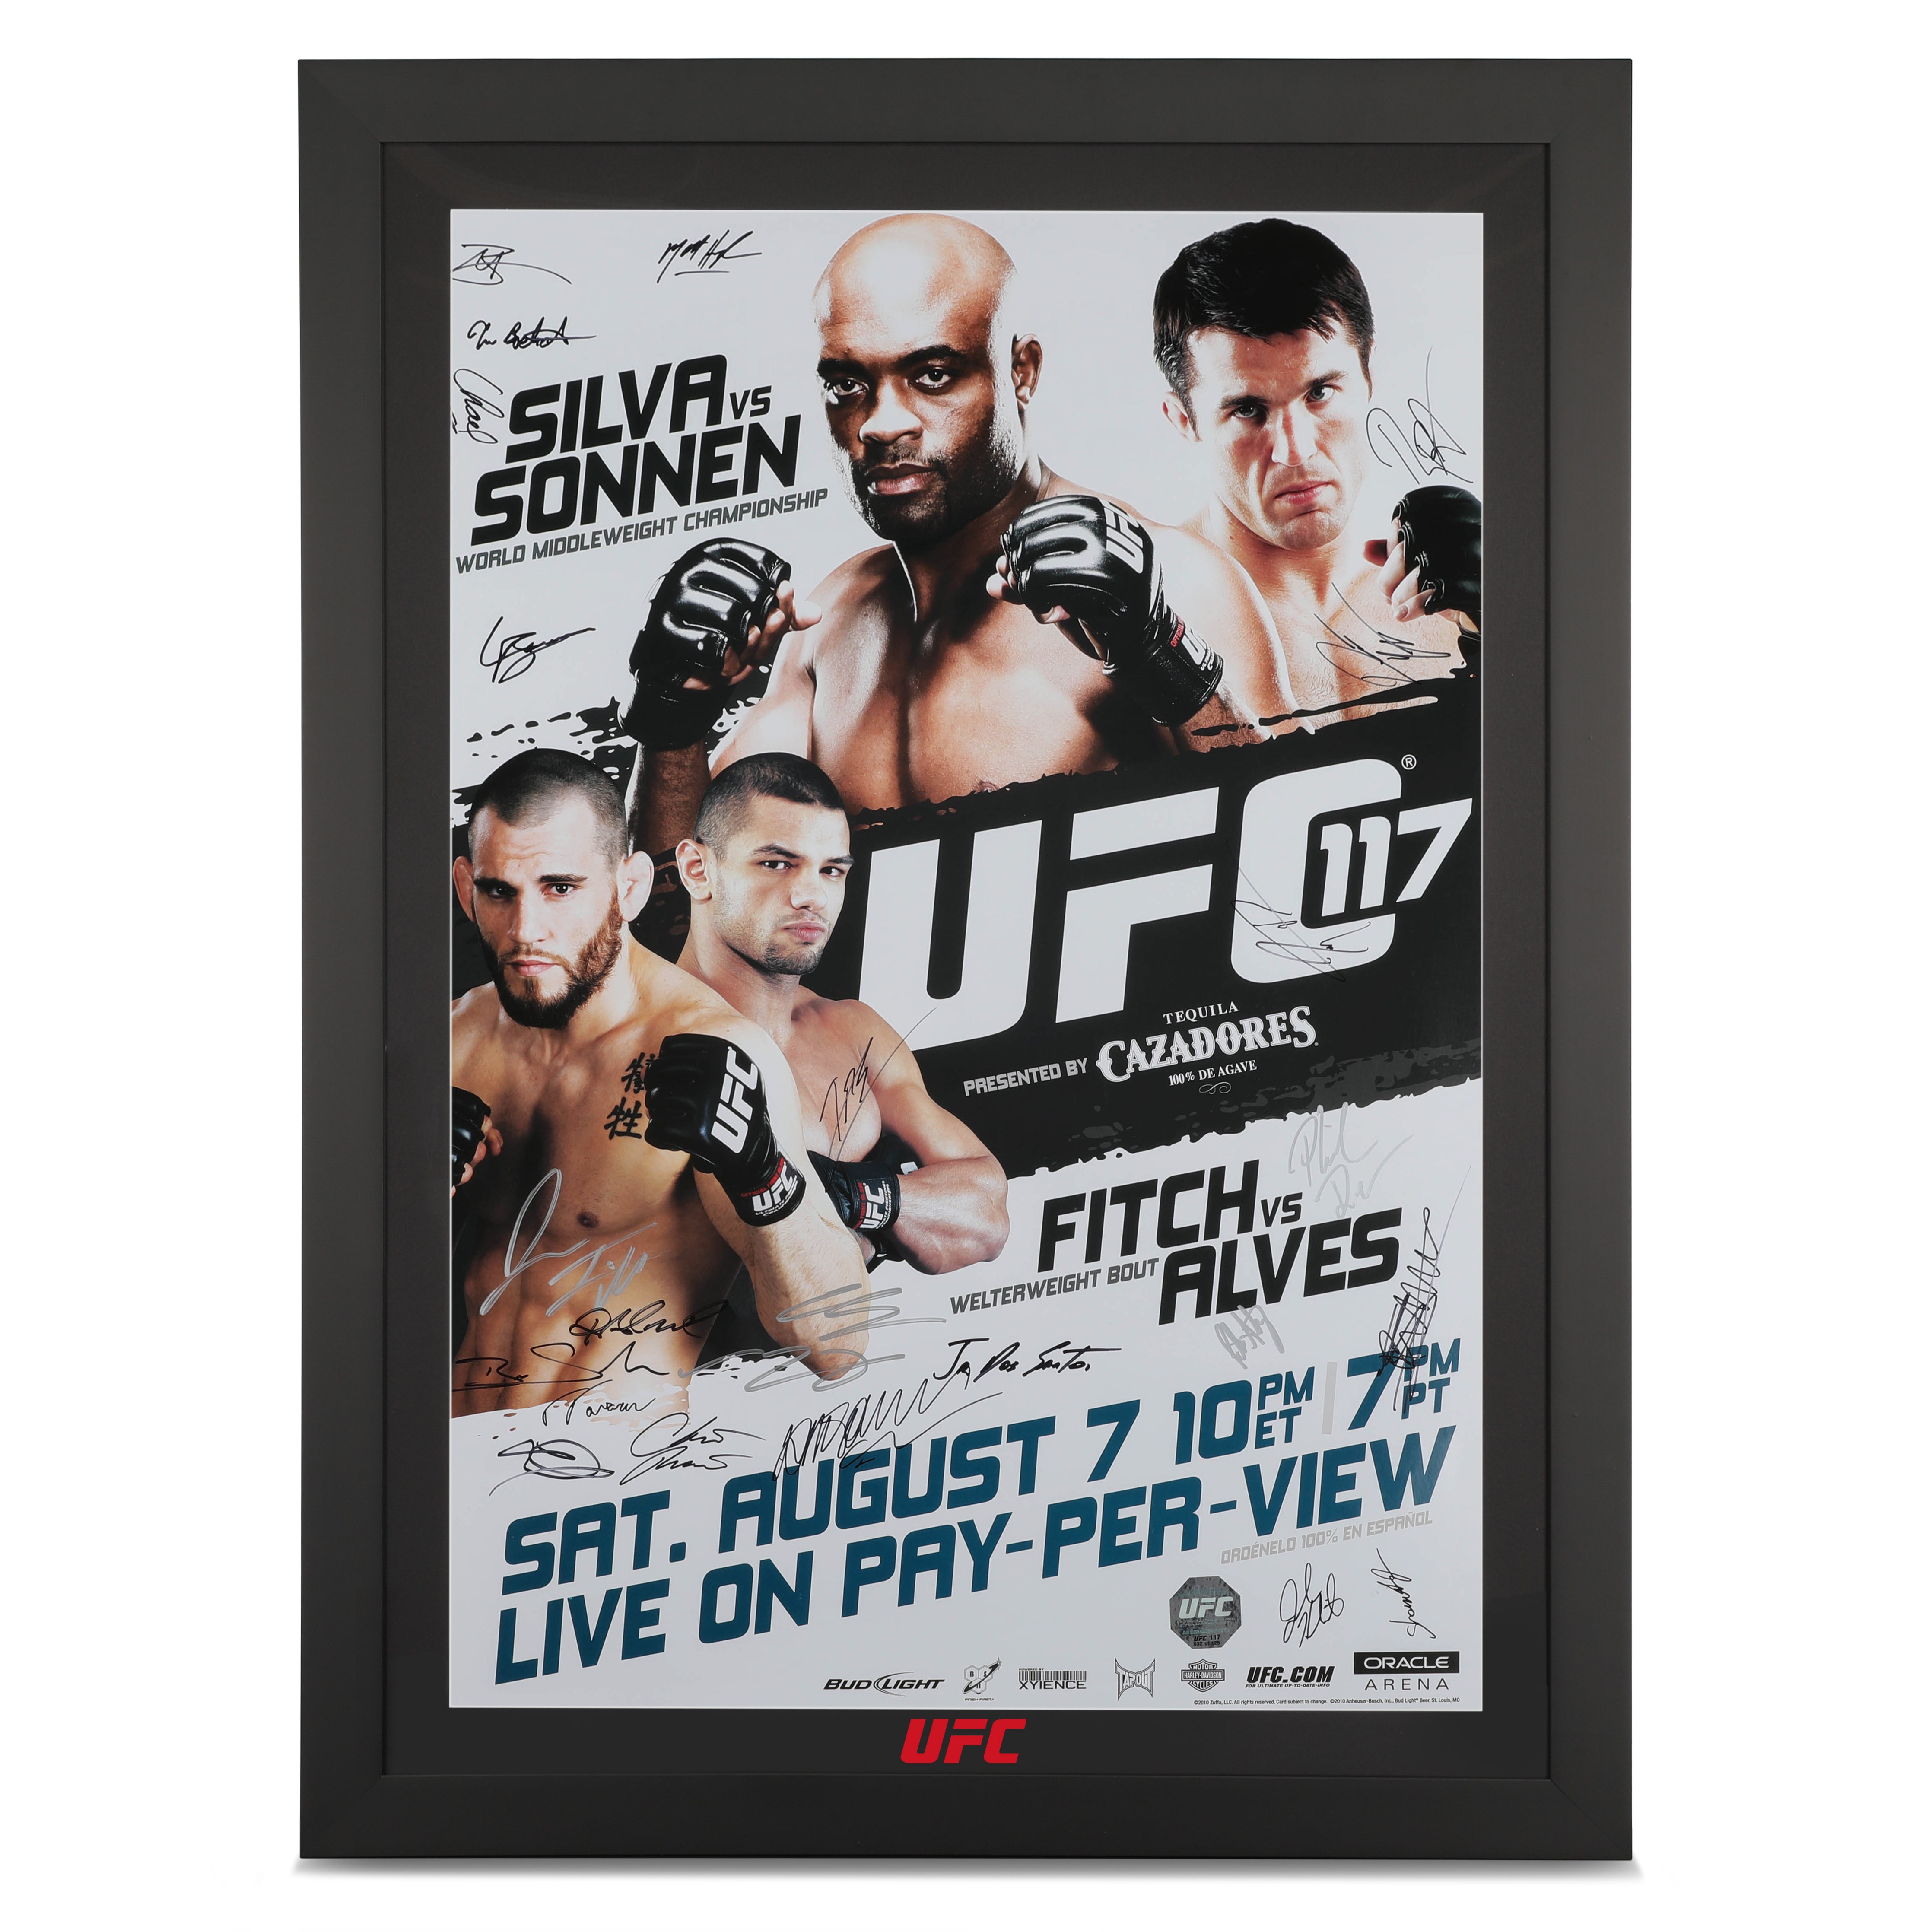 UFC 117: Silva Vs. Sonnen Autographed Poster